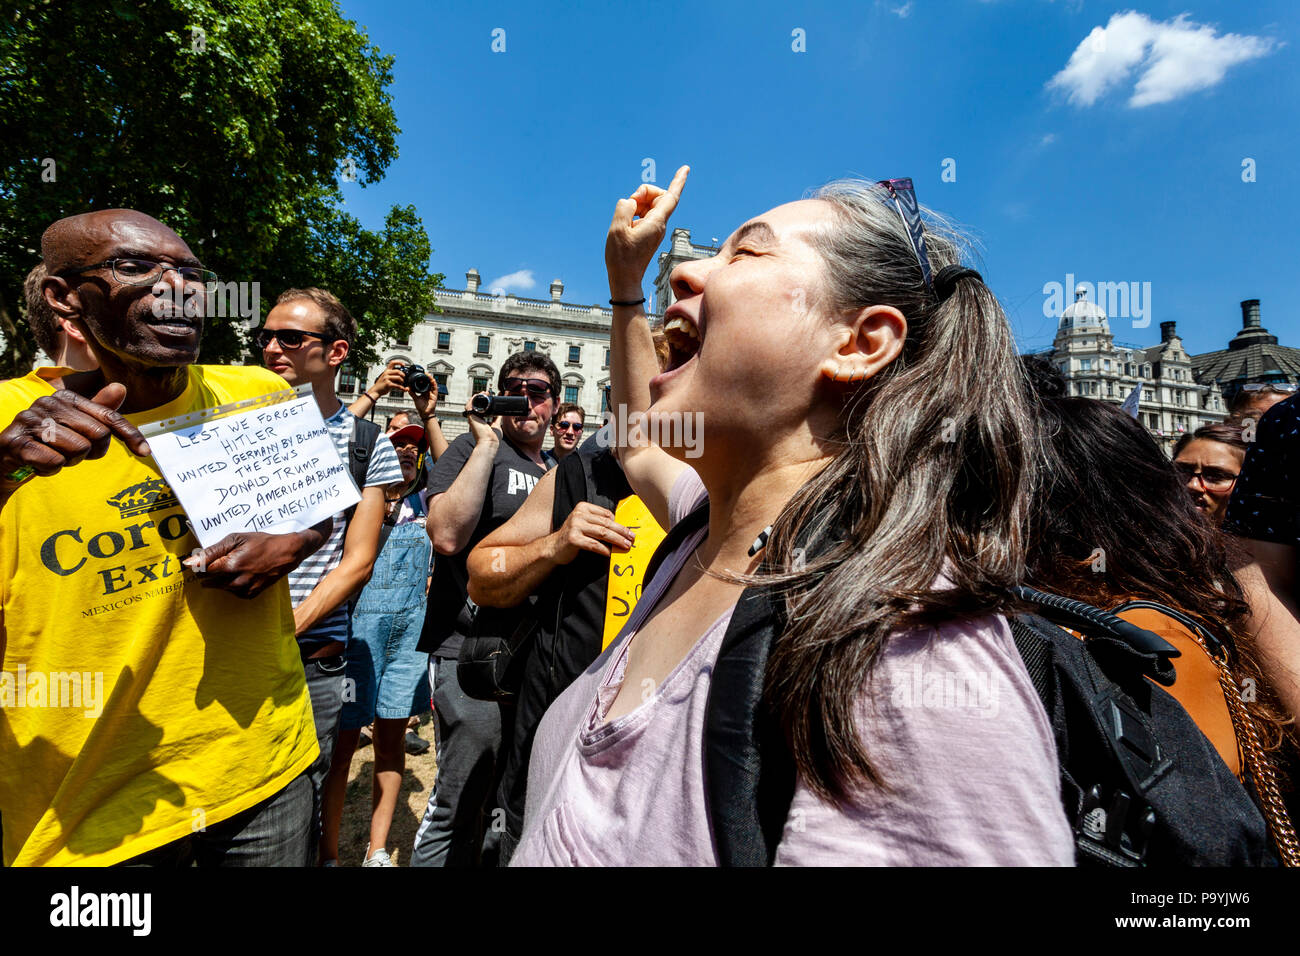 Une femme américaine plaide la cause de l'atout de Donald lors d'une manifestation à la place du Parlement, Londres, Angleterre Banque D'Images